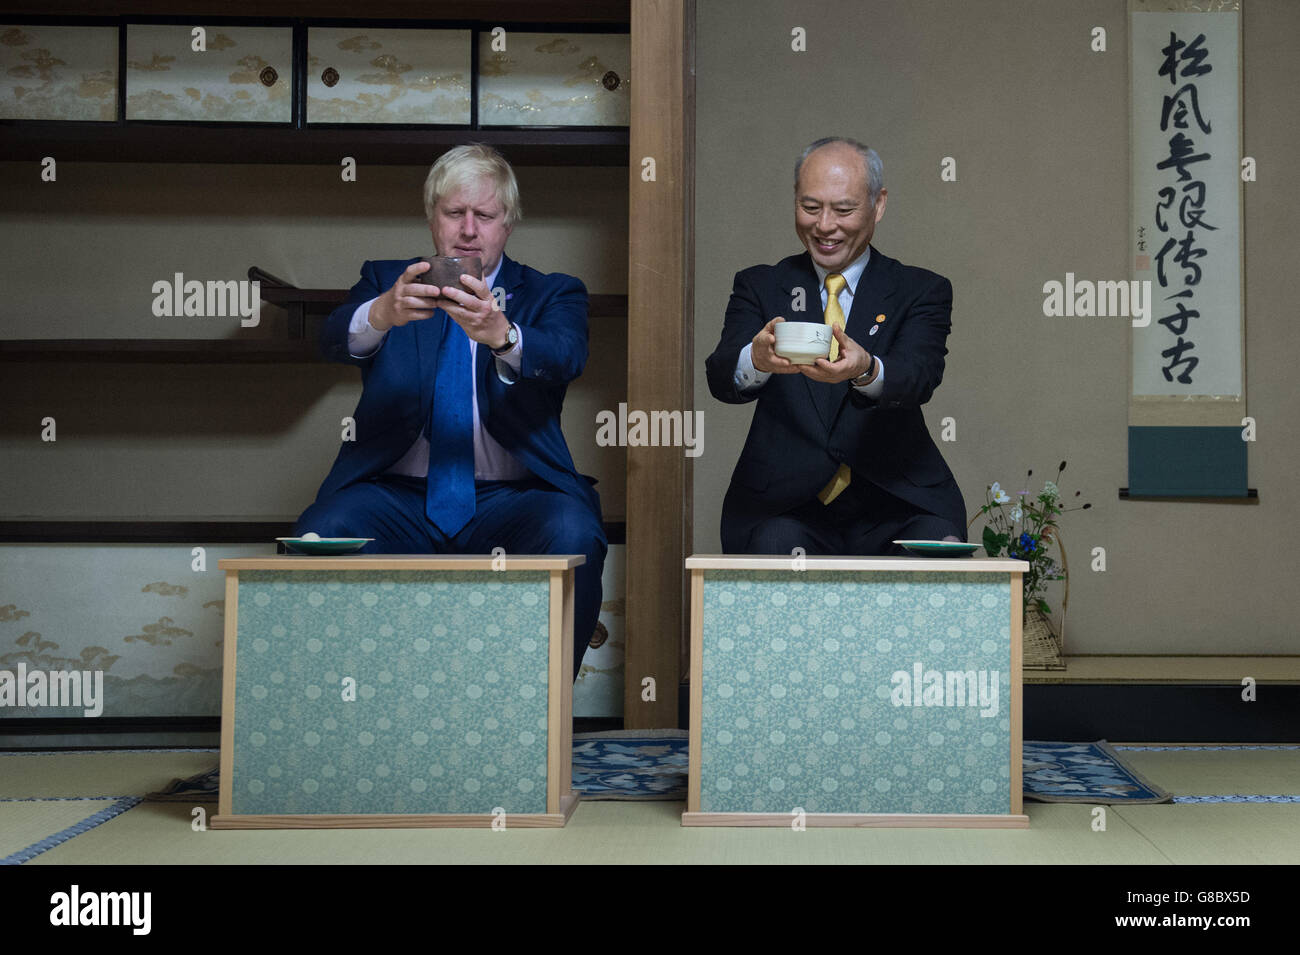 Der Bürgermeister von London Boris Johnson nimmt an einer traditionellen japanischen Teezeremonie mit seinem Amtskollegen in Tokio Teil, Gouverneur Yoichi Masuzoe, wo er lernte, wie man Tee zubereitet. Stockfoto